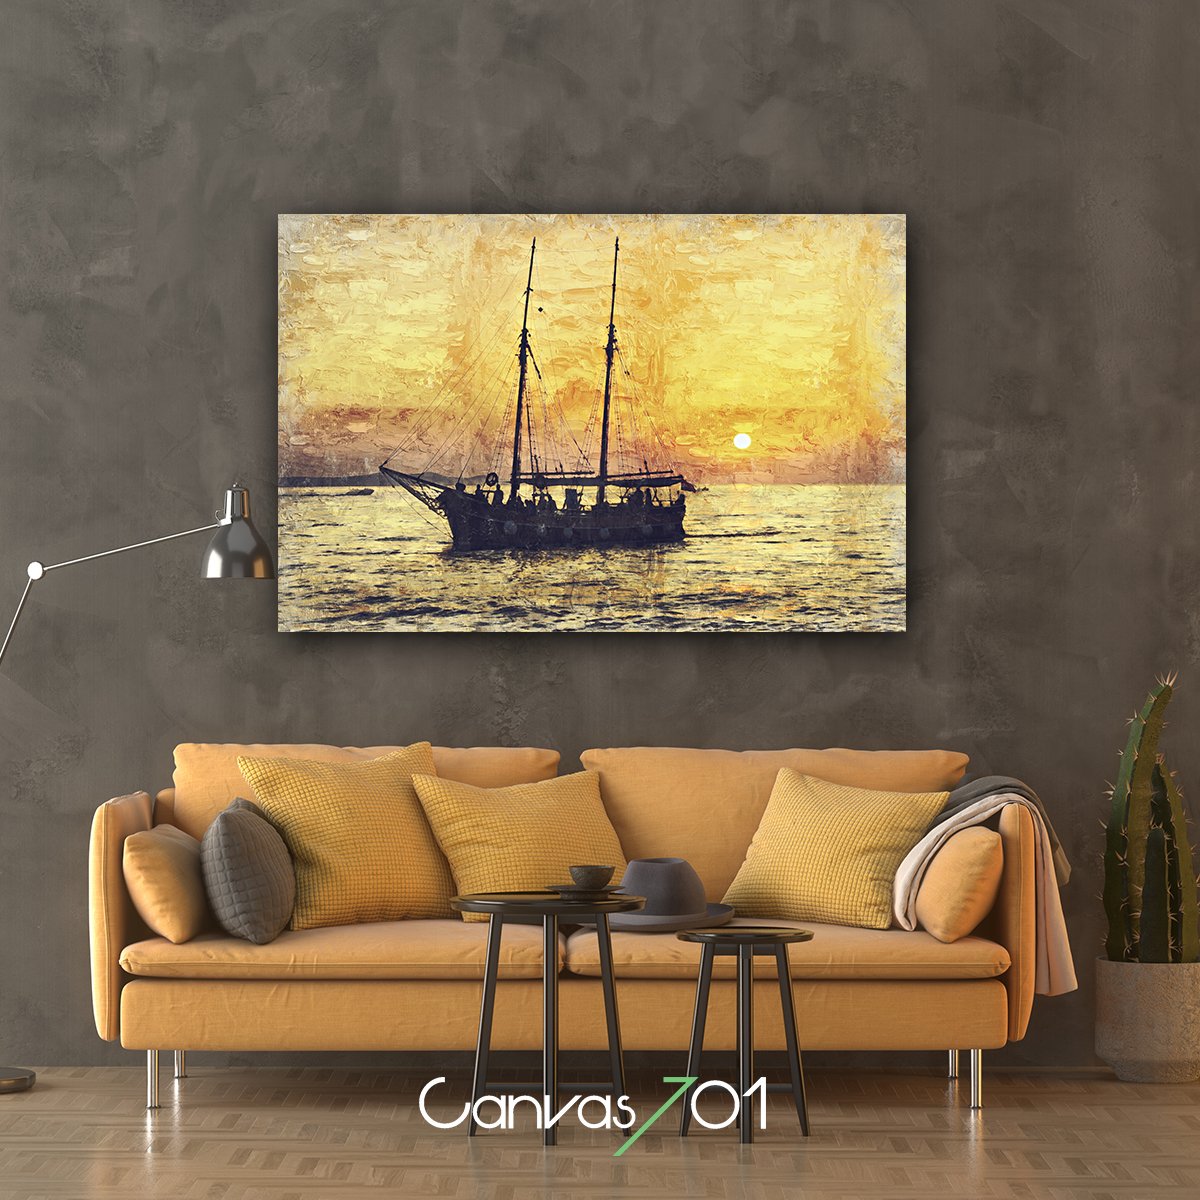 Canvas701 | Yağlı Boya Görünümlü Yelkenli Giderken Kanvas Tablo